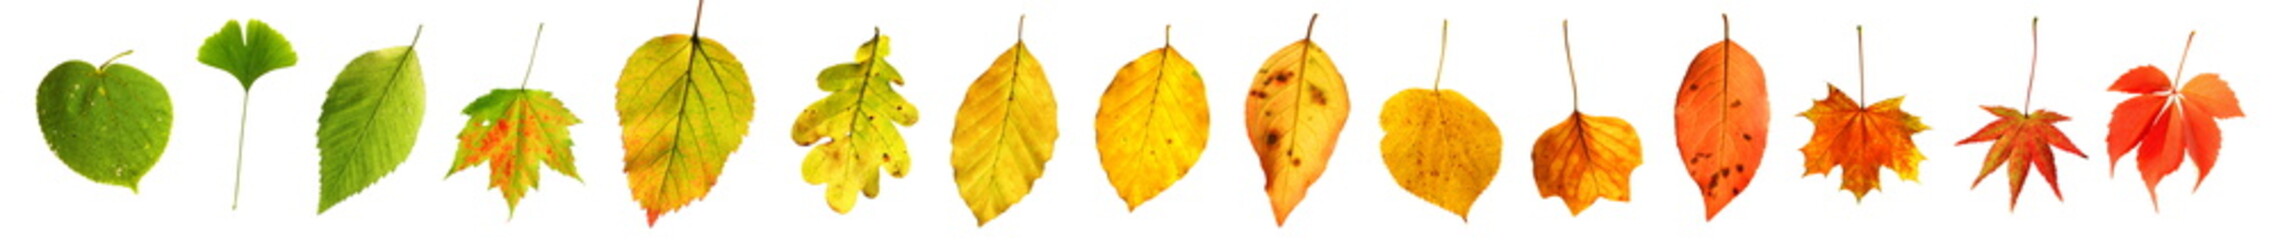 Farbgradient grün nach rot Herbstblätter Herbst Laub freigestellt